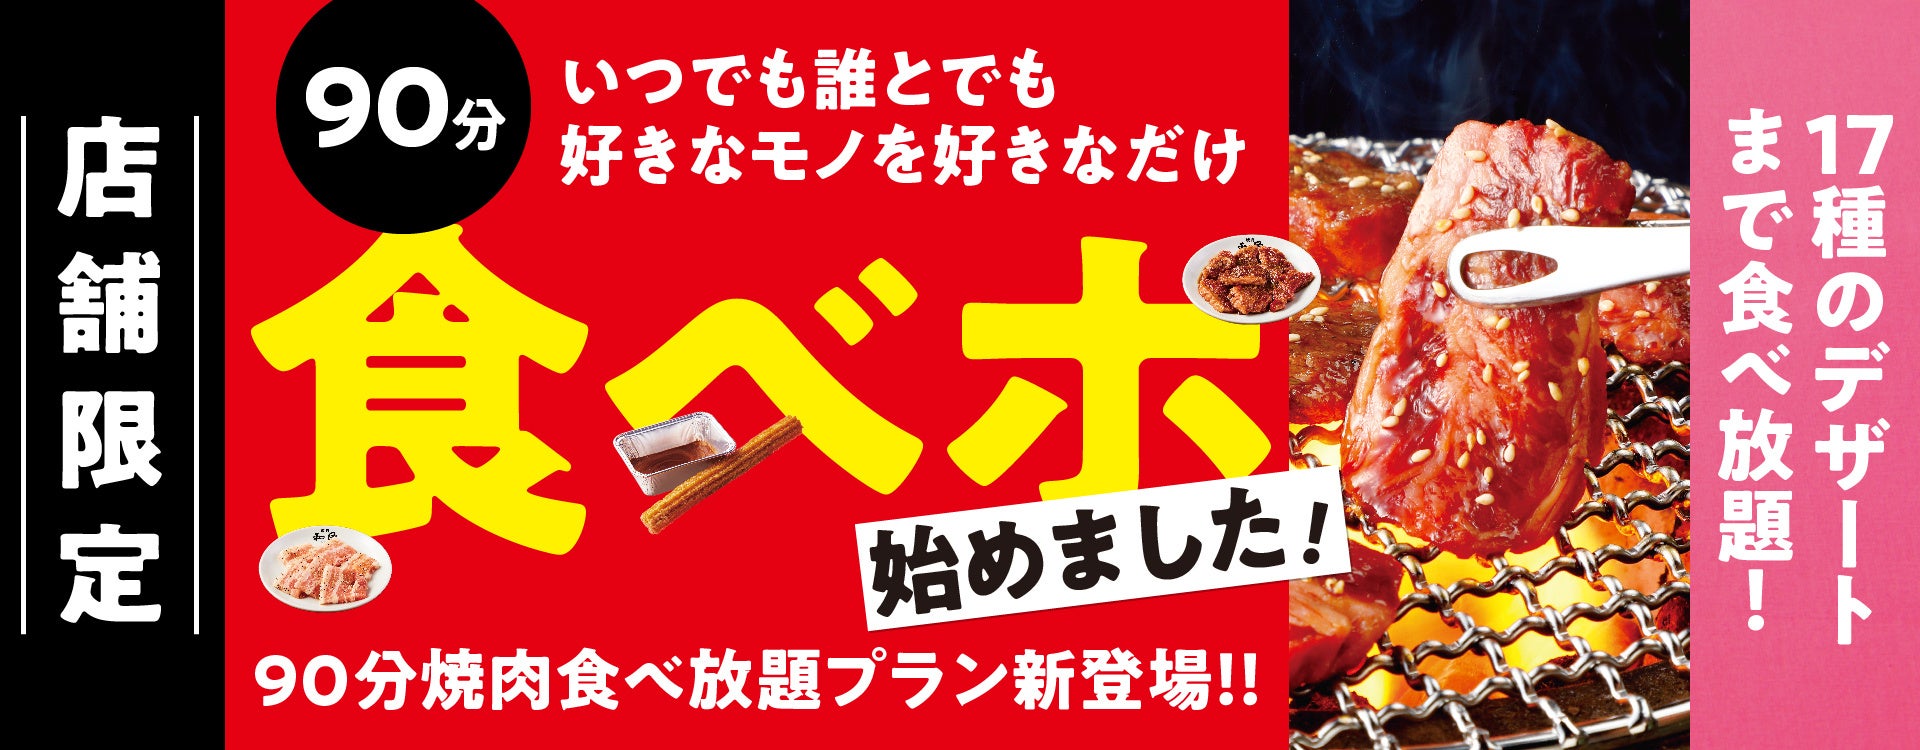 東京マリオットホテル 実りの秋に、香りと味わいの饗宴を堪能するディナーコース「Autumn Delights」を発売